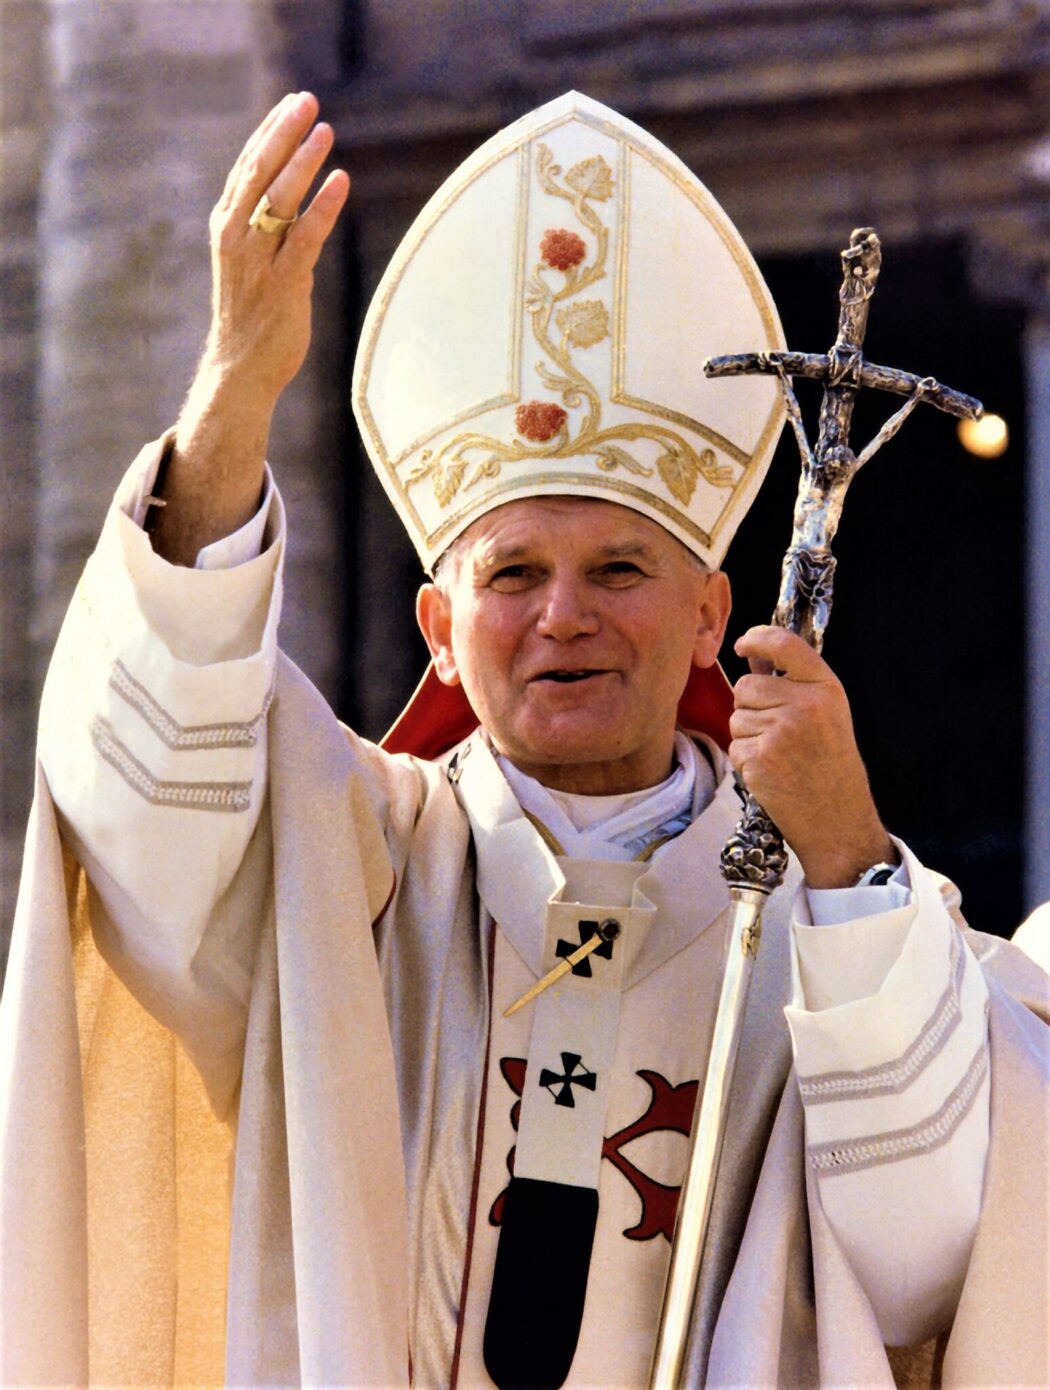 En 1991, Saint Jean-Paul II comparait l’avortement au génocide nazi